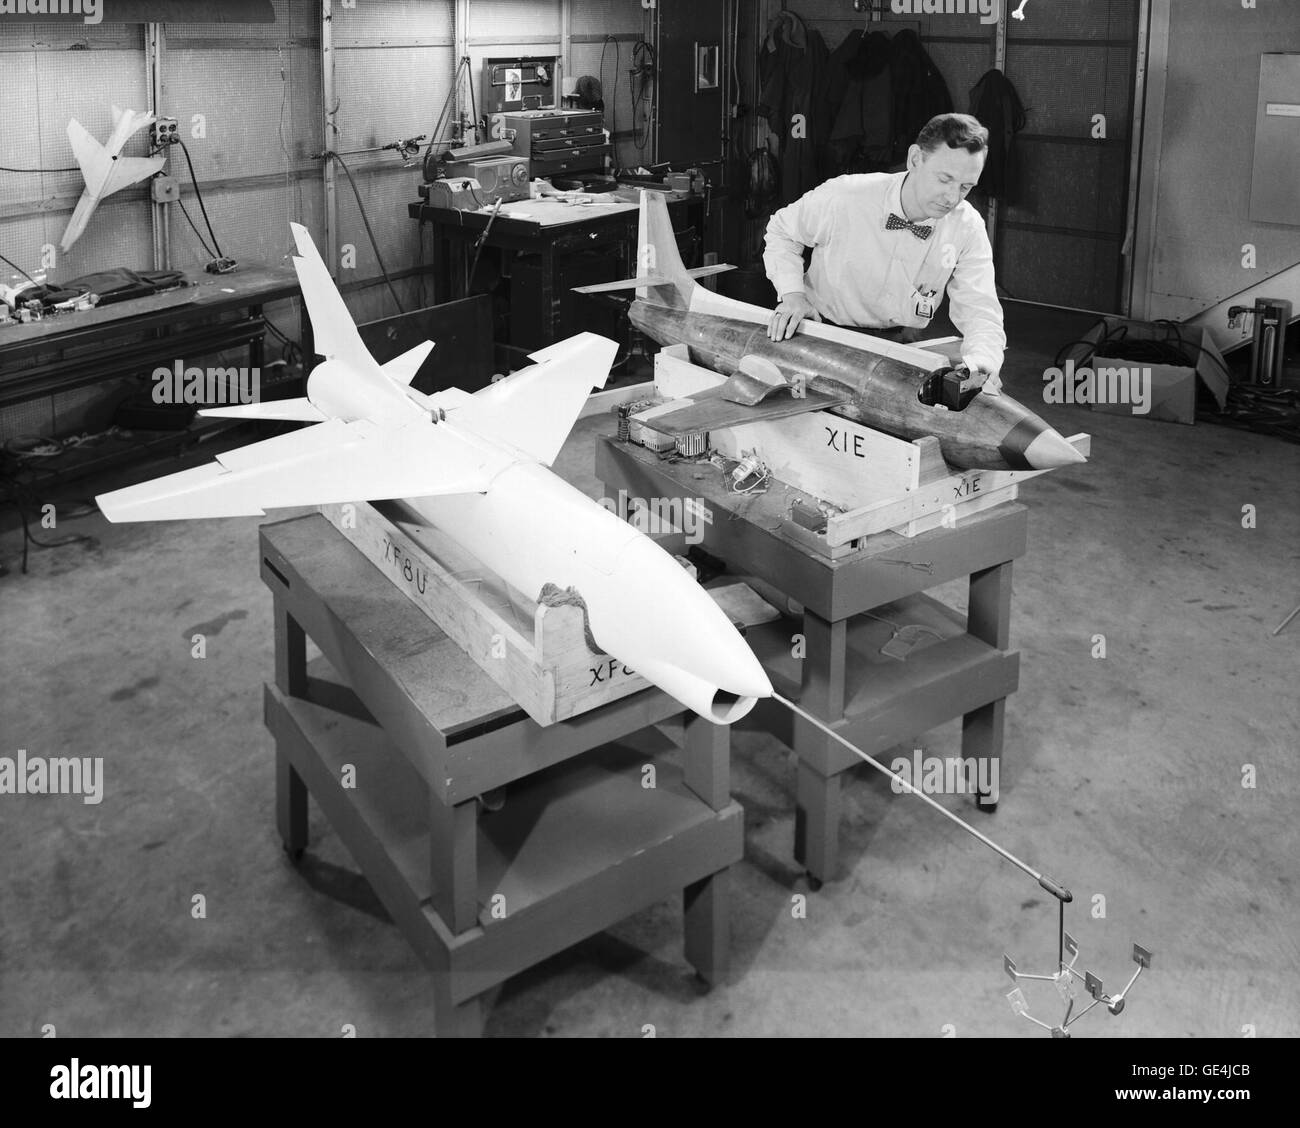 Un technicien prépare des modèles dynamiques de le Bell X-1E et le Vought XF-8U Crusader pour les essais en soufflerie en 1957. Le Crusader fut alors l'avion le plus rapide de la Marine (maximum vitesse de Mach 1,75 à 35 000 pieds). 19 février, 1957 Banque D'Images